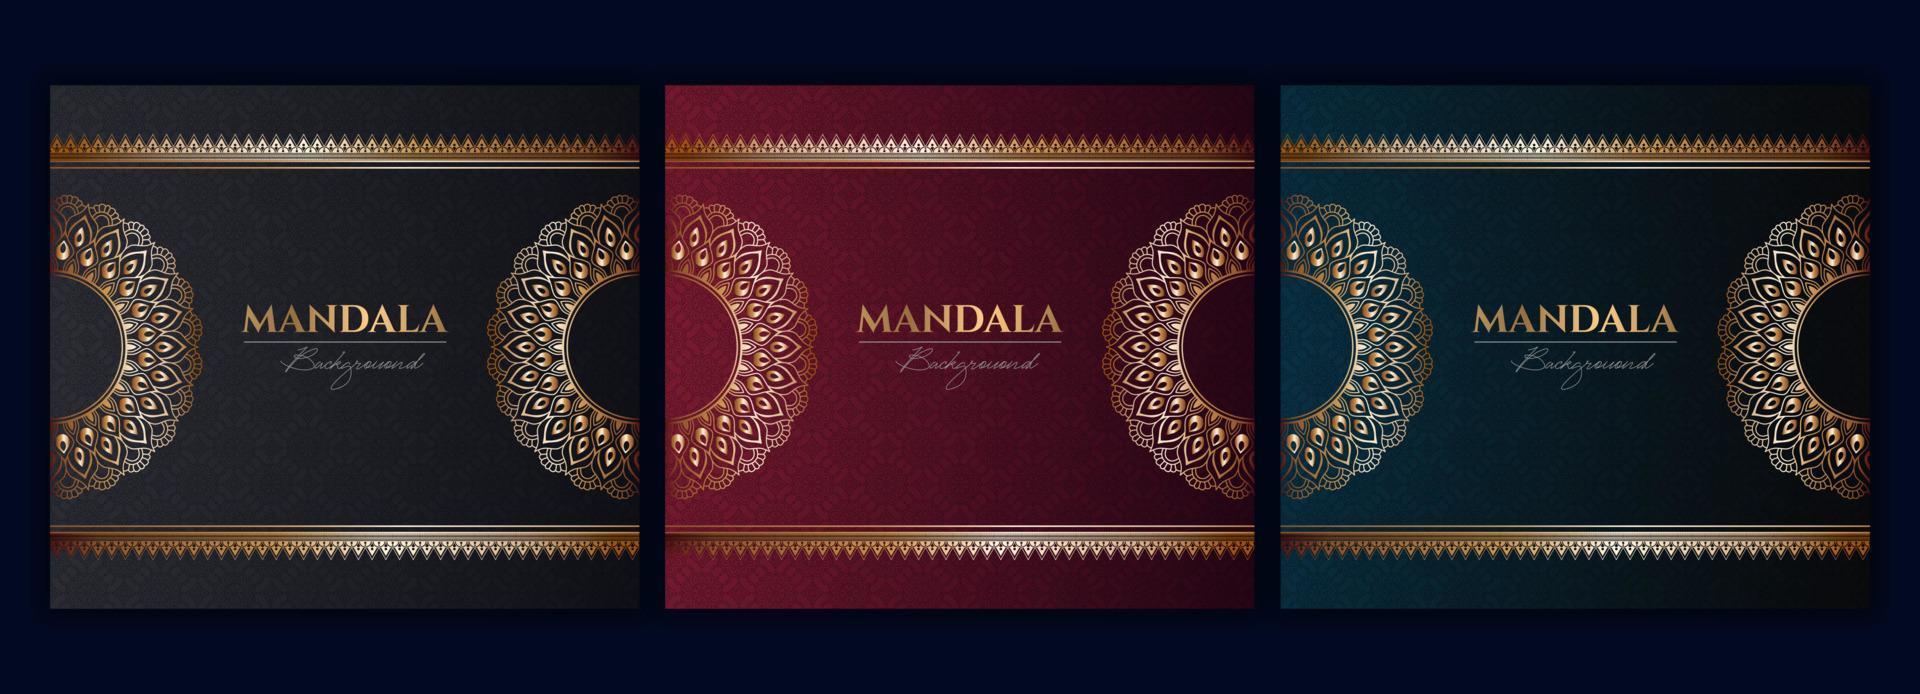 reeks van abstract goud luxe mandala achtergrond vector sjabloon, circulaire sier- arabesk patroon voor poster, omslag, brochure, folder. rood, groente, blauw achtergrond met etnisch bloemen mandala element